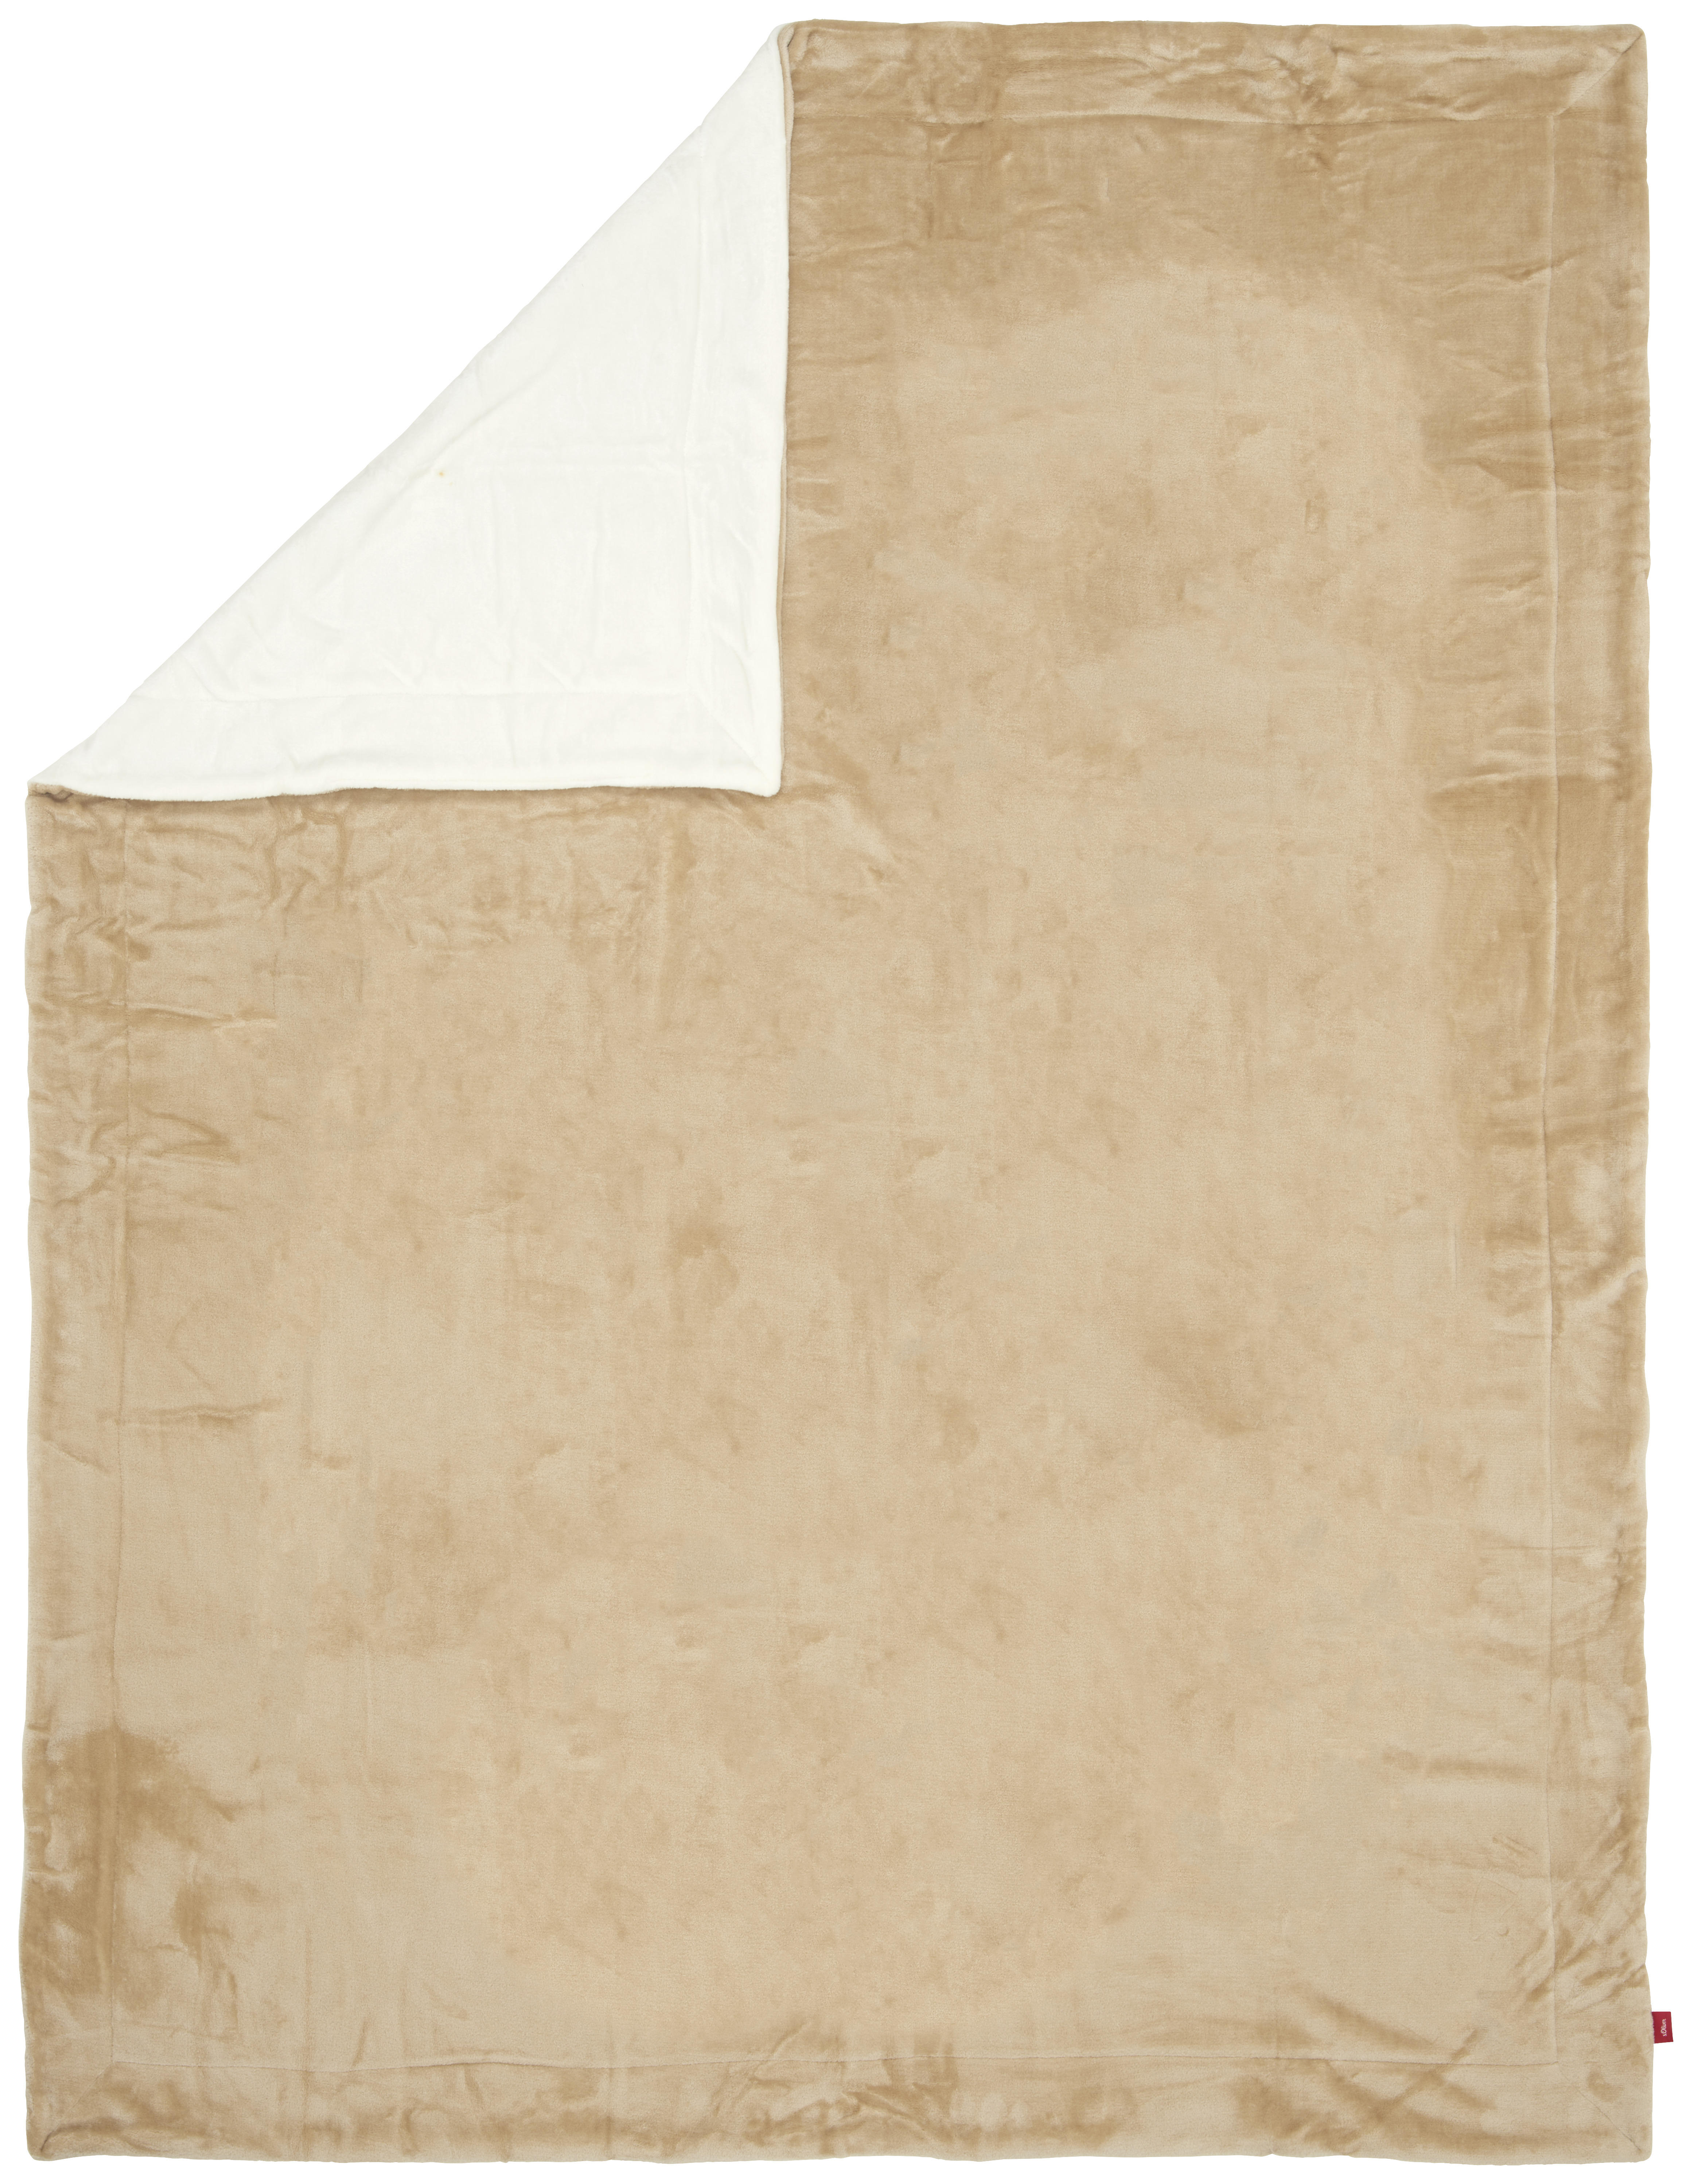 DECKE Double Soft 150/200 cm  - Beige/Weiß, KONVENTIONELL, Textil (150/200cm) - S. Oliver